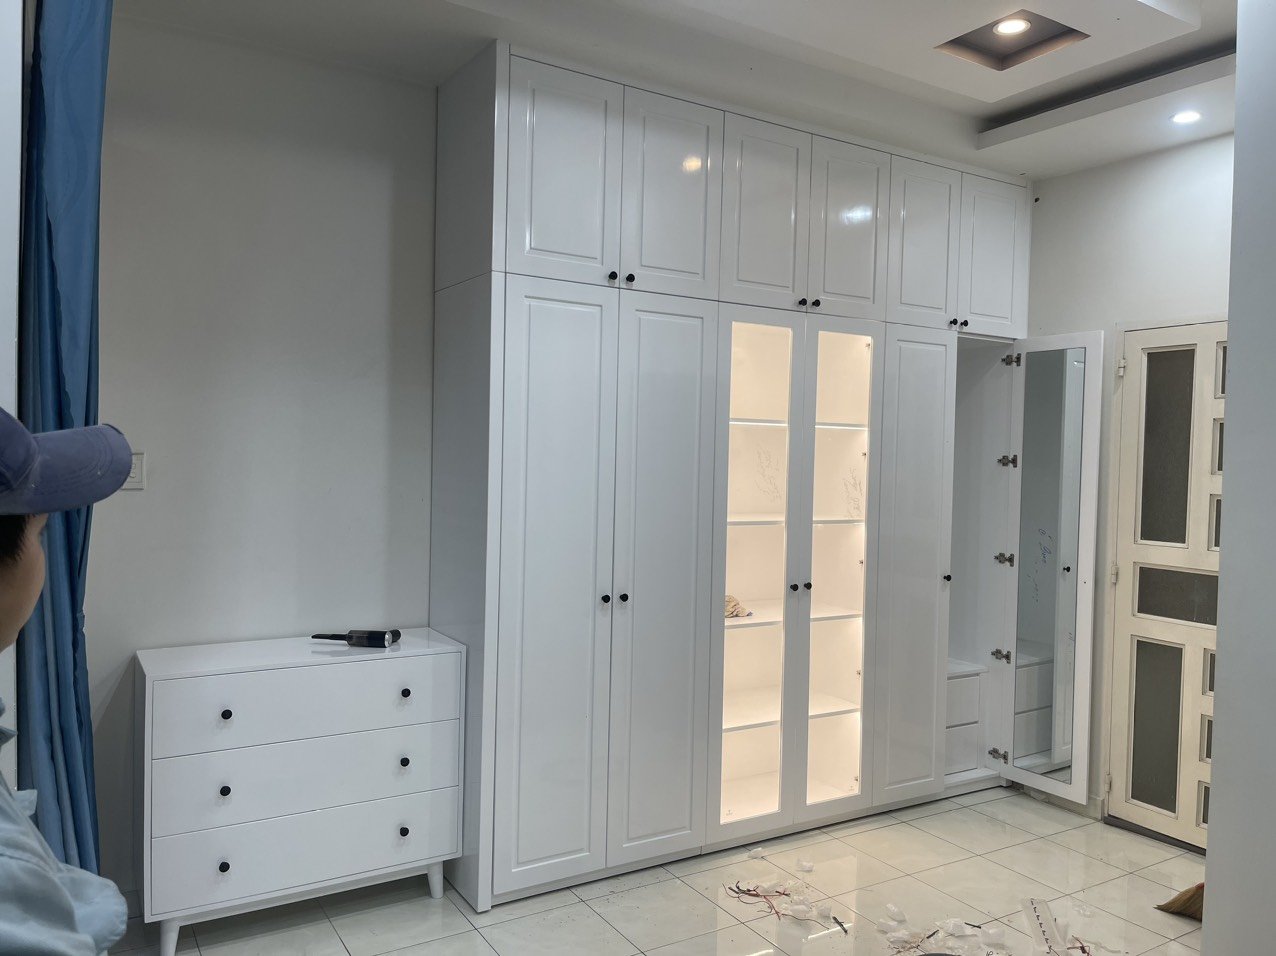 SXLĐ nội thất gỗ sồi Nga sơn PU trắng mờ - các hệ tủ bàn - nhà chị Vi - Hóc Môn